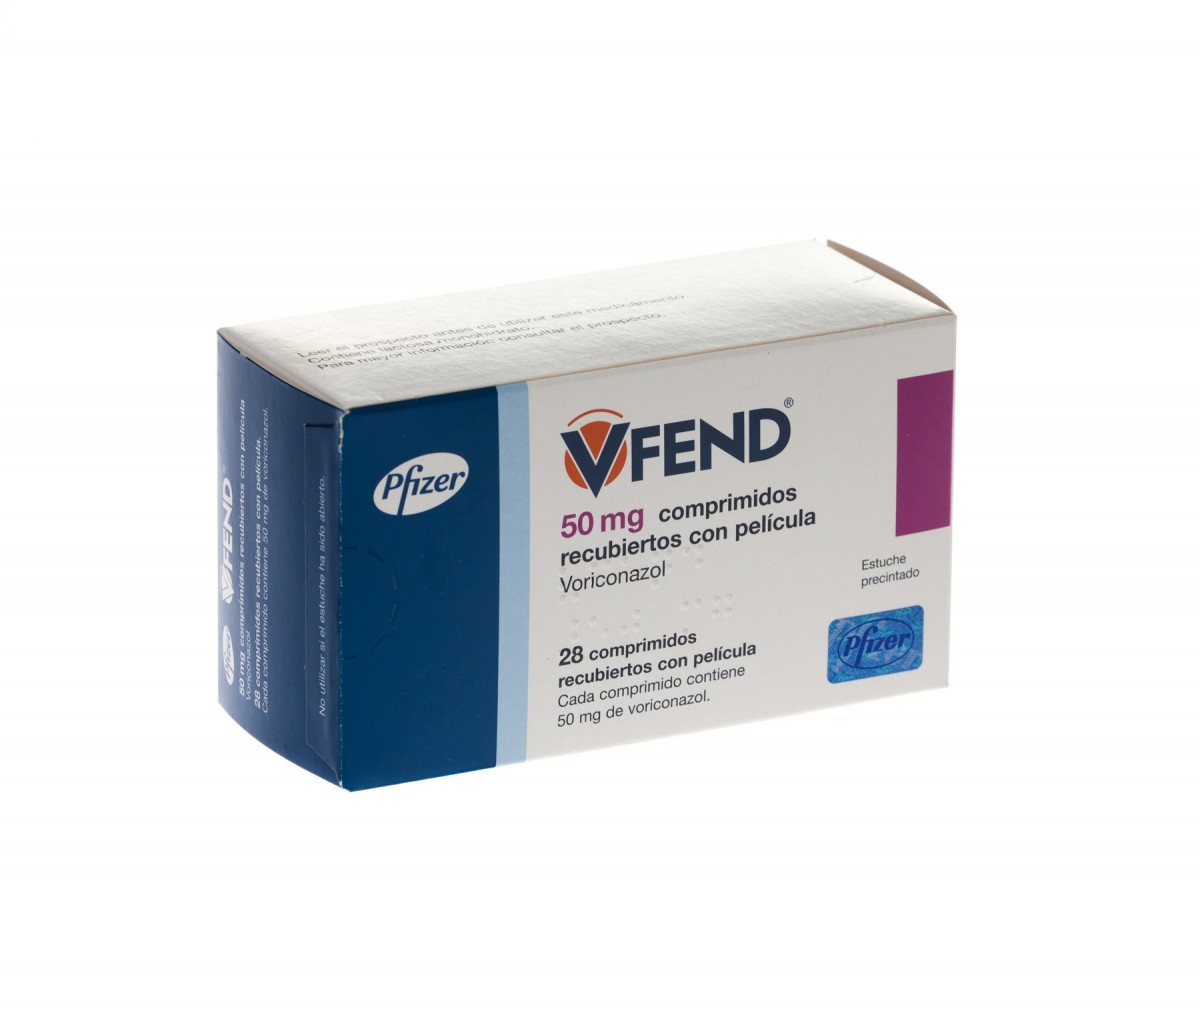 VFEND 50 mg COMPRIMIDOS RECUBIERTOS CON PELICULA, 28 comprimidos fotografía del envase.